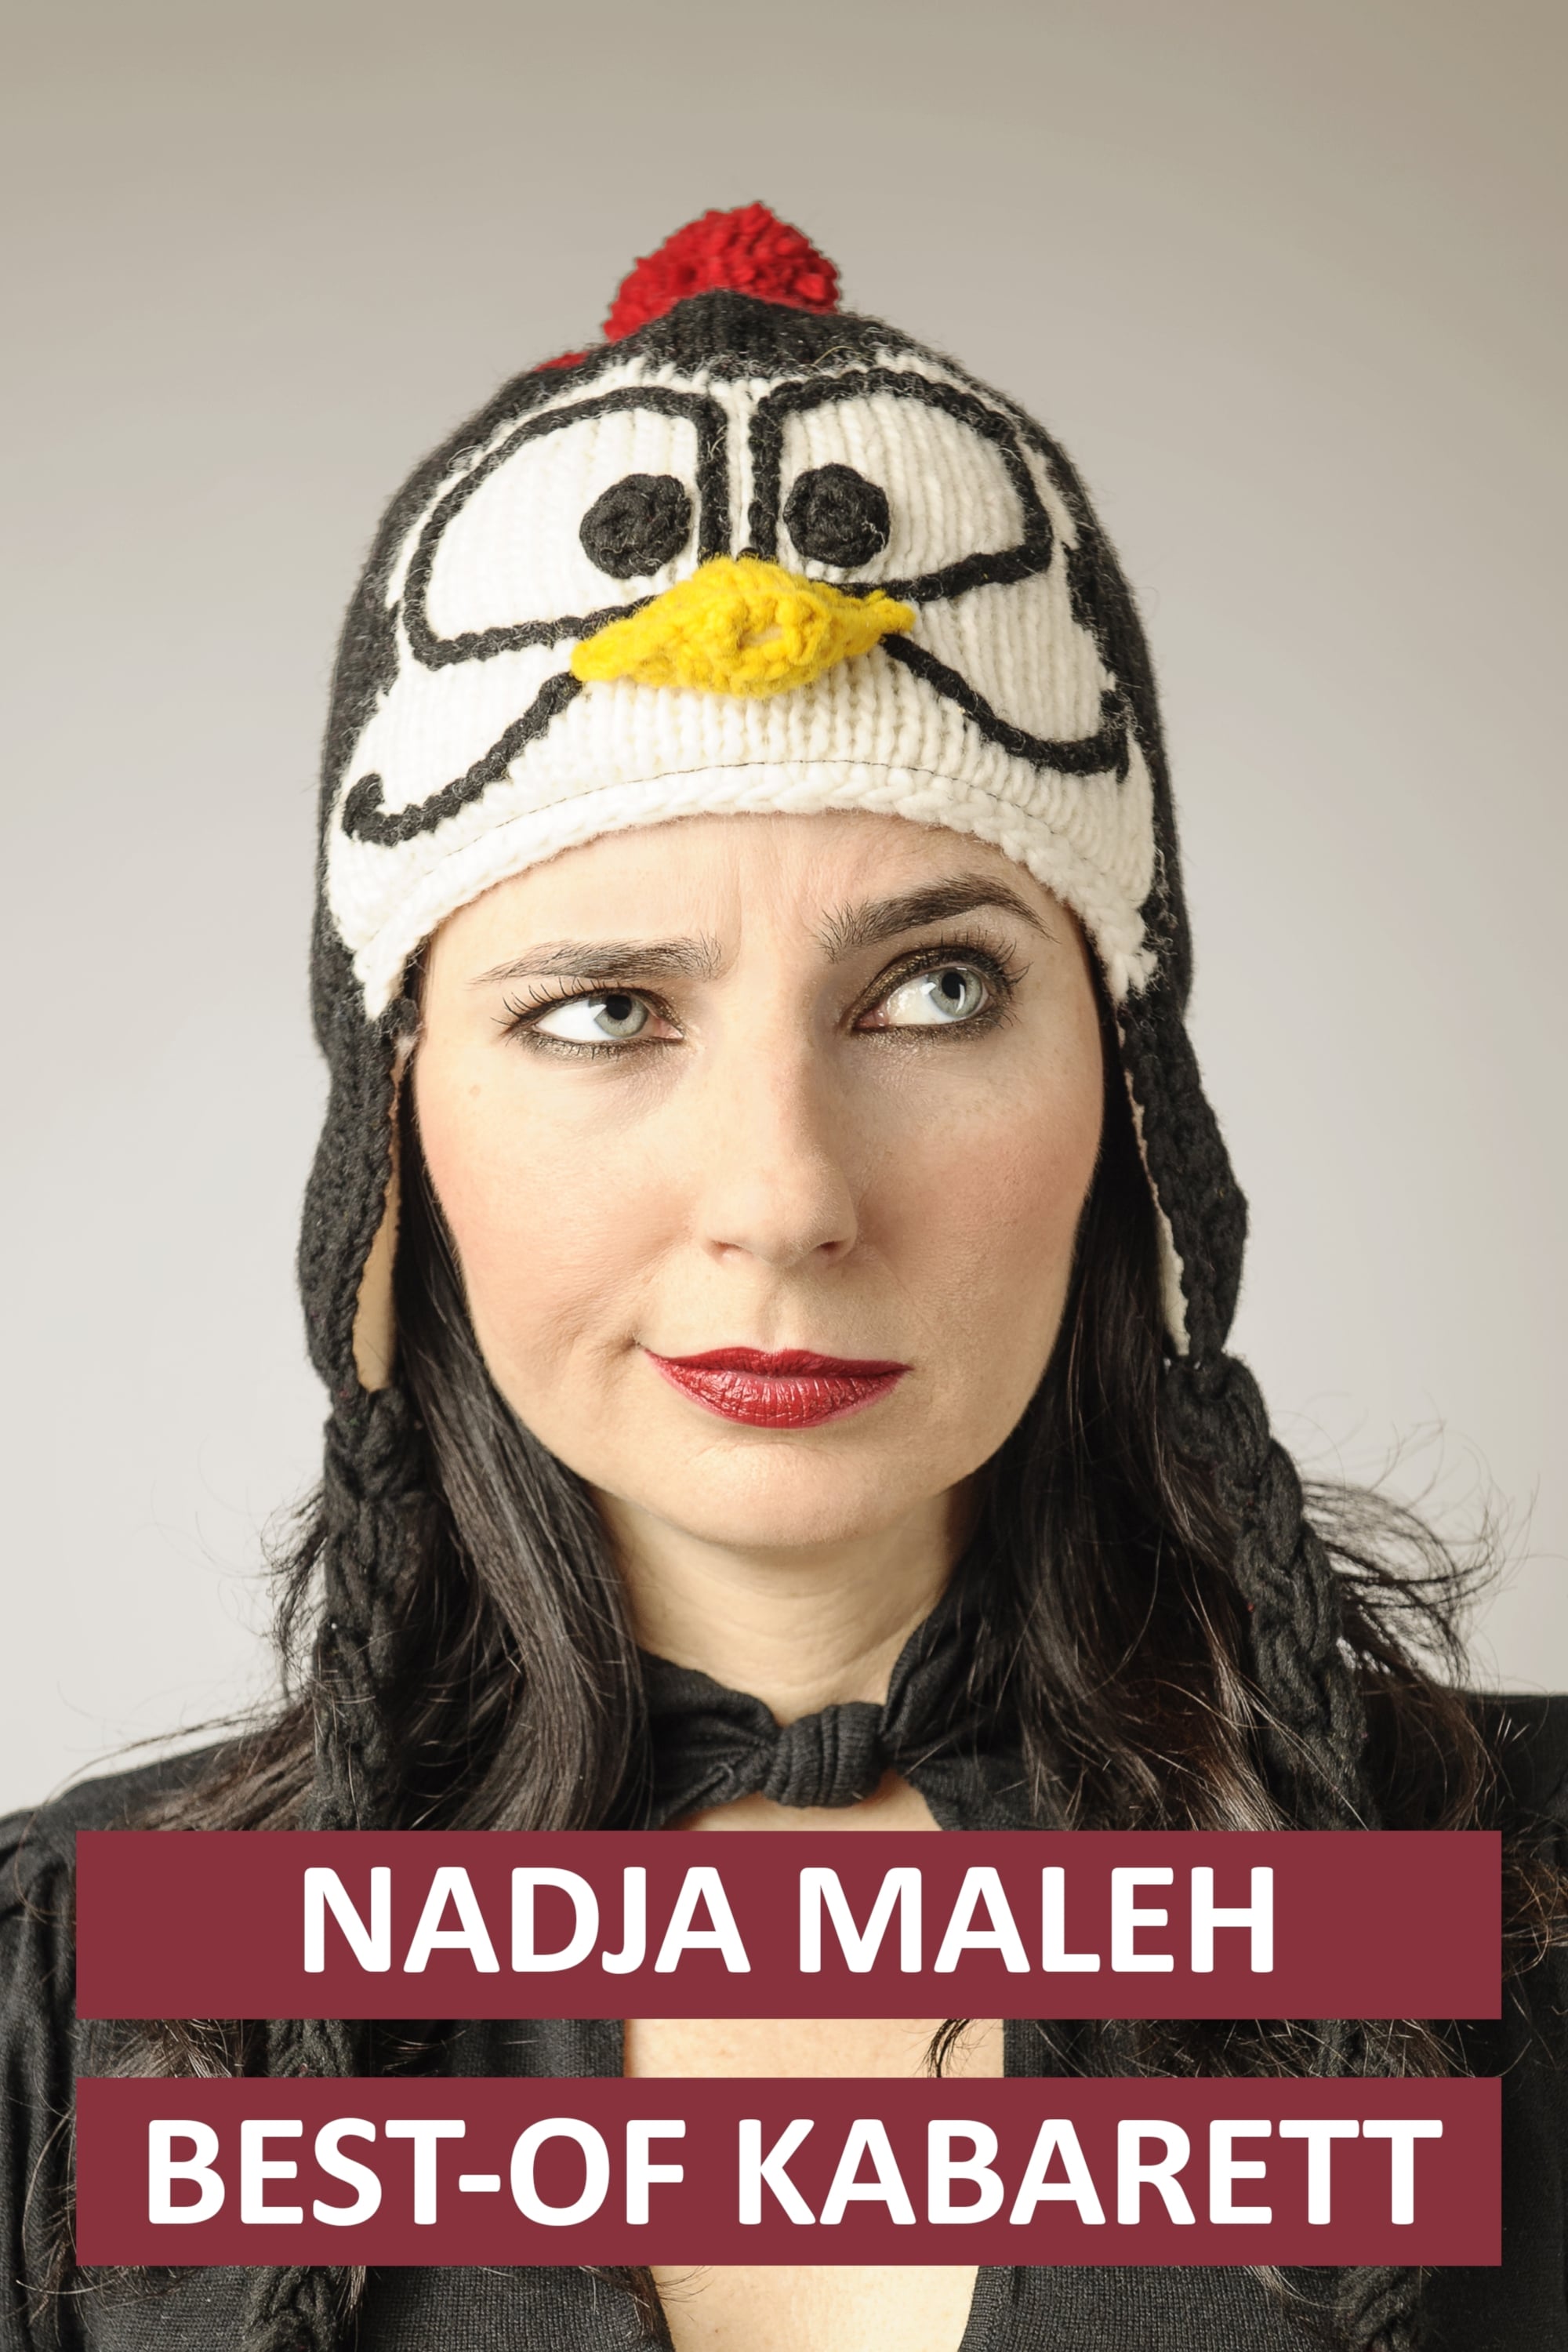 Nadja Maleh - "Best-of Kabarett"